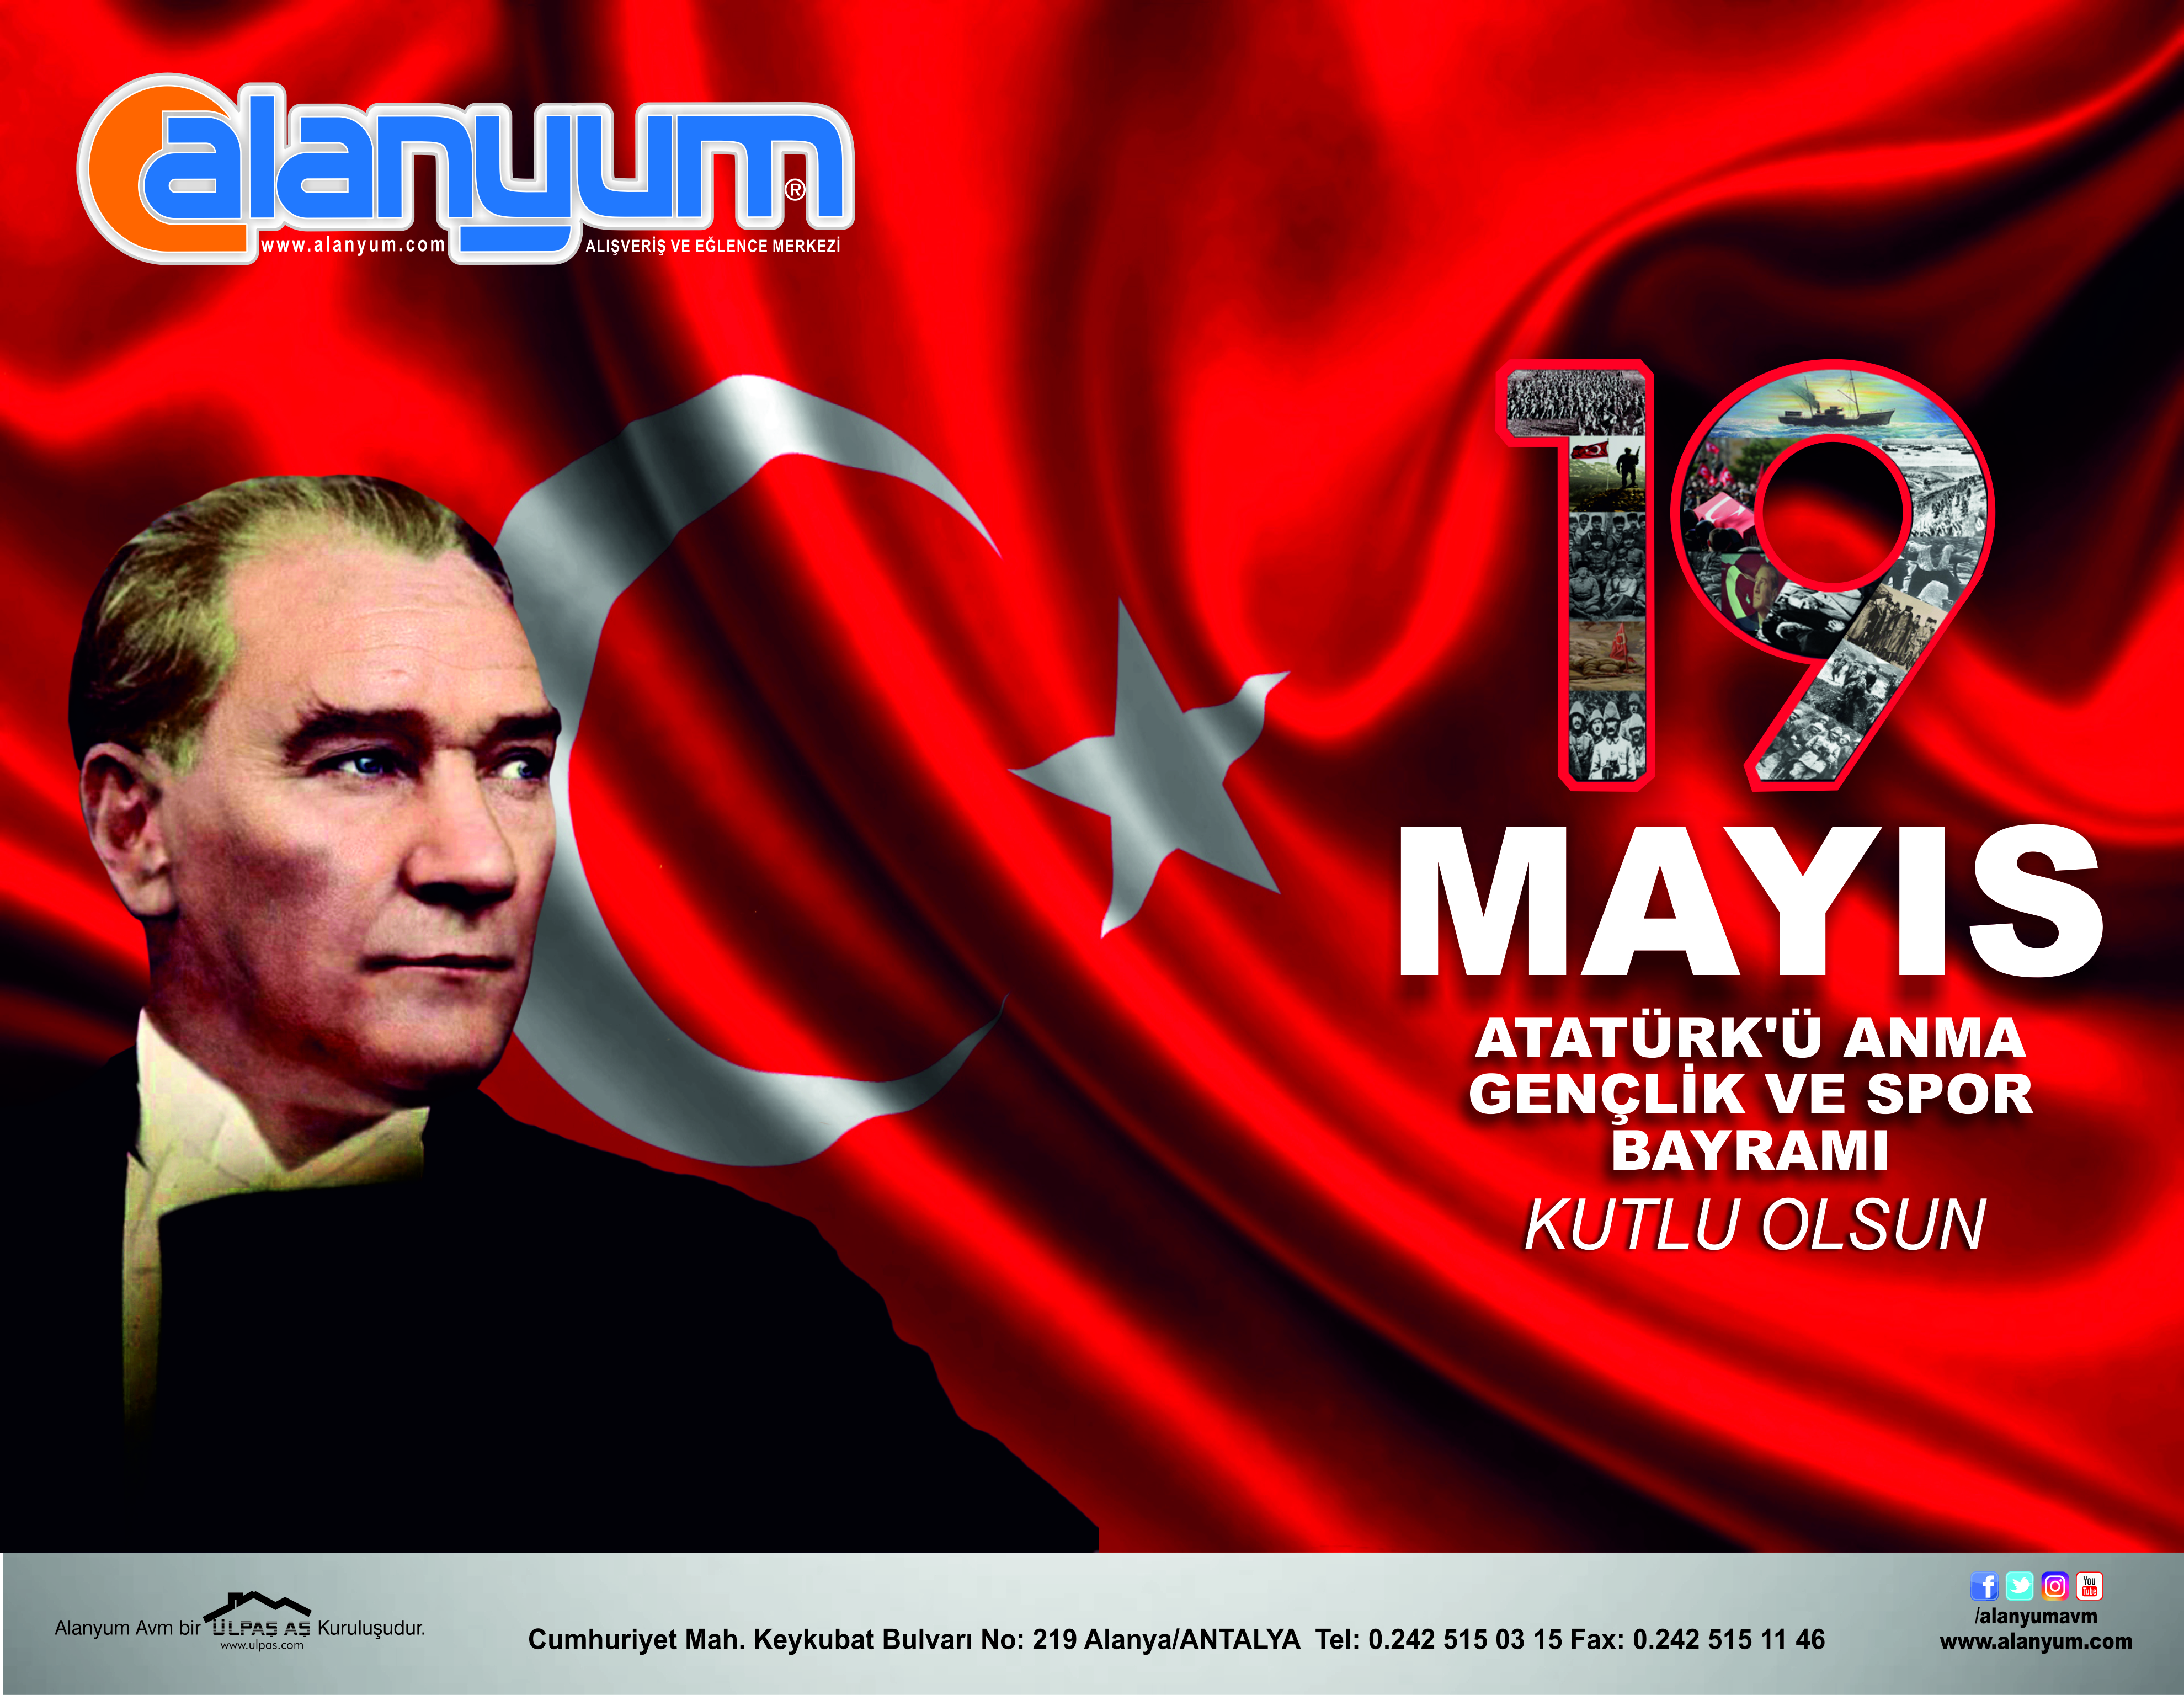 19 Mayıs Atatürk’ü Anma Gençlik ve Spor Bayramı kutlu olsun!